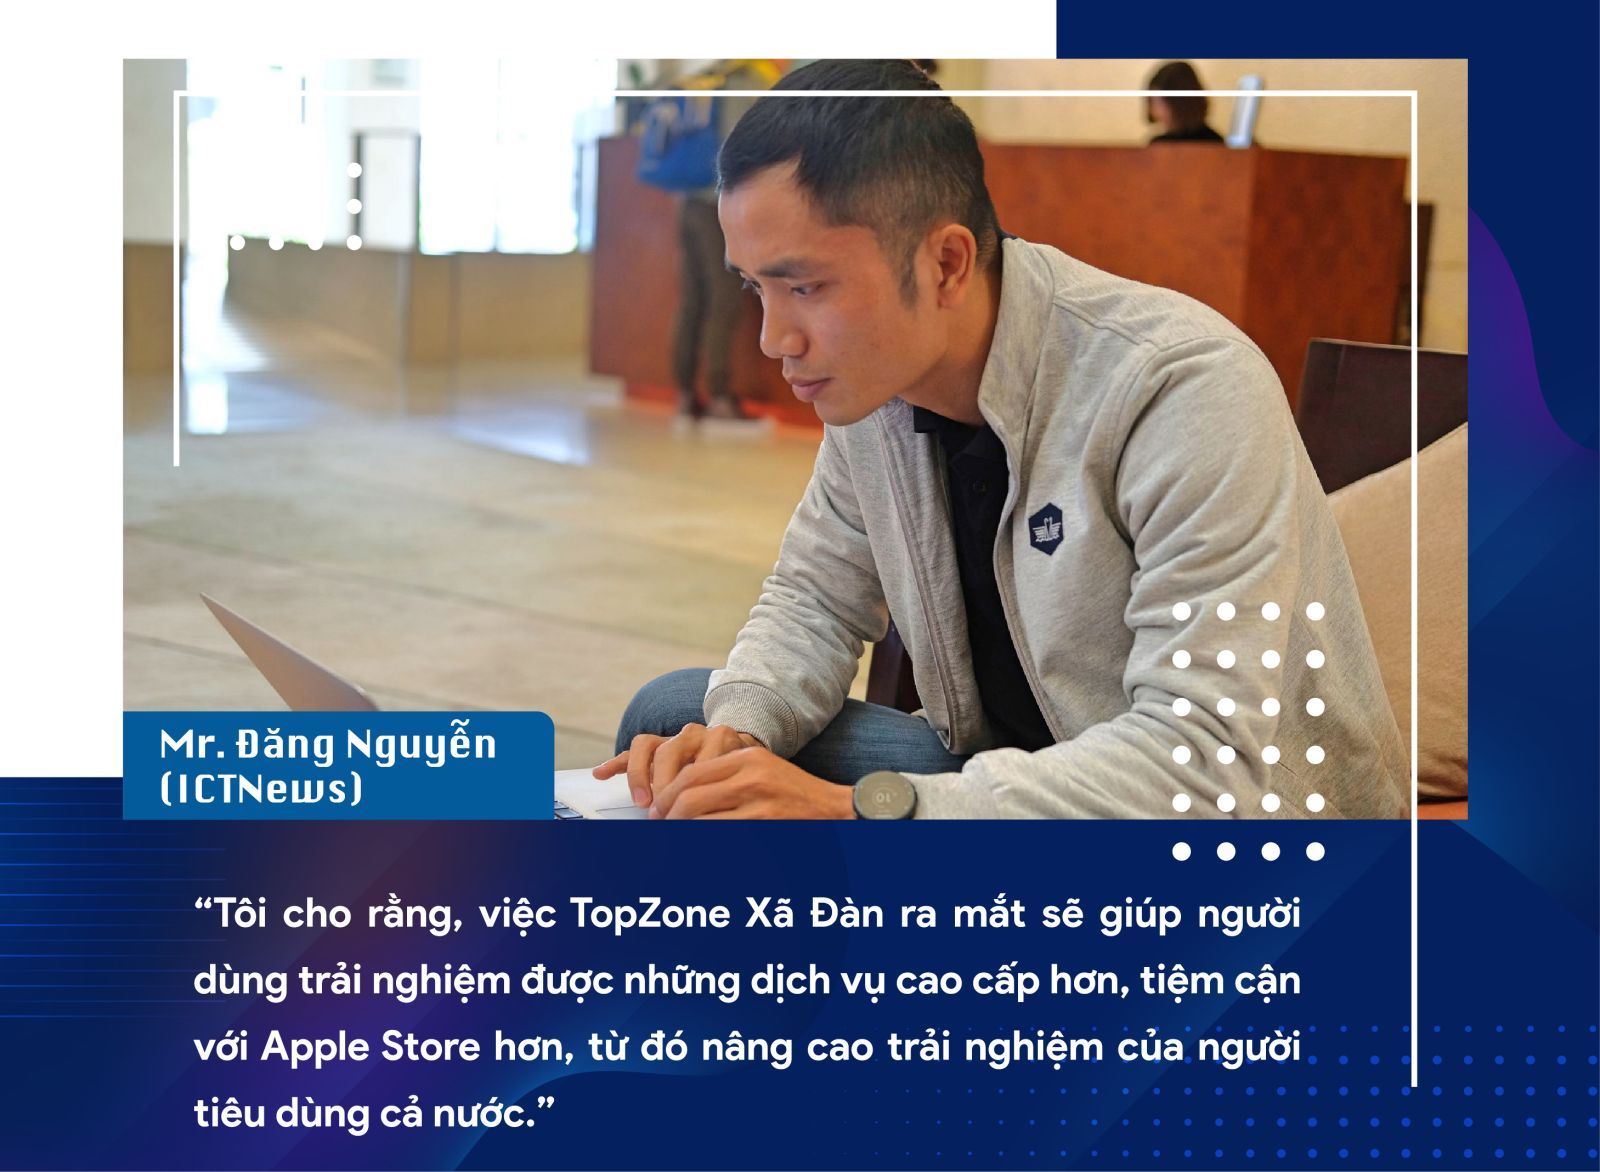 Chuyên gia công nghệ và fan nhà Táo nói gì về TopZone APR Hà Nội trước ngày ra mắt marketingreview.vn 1